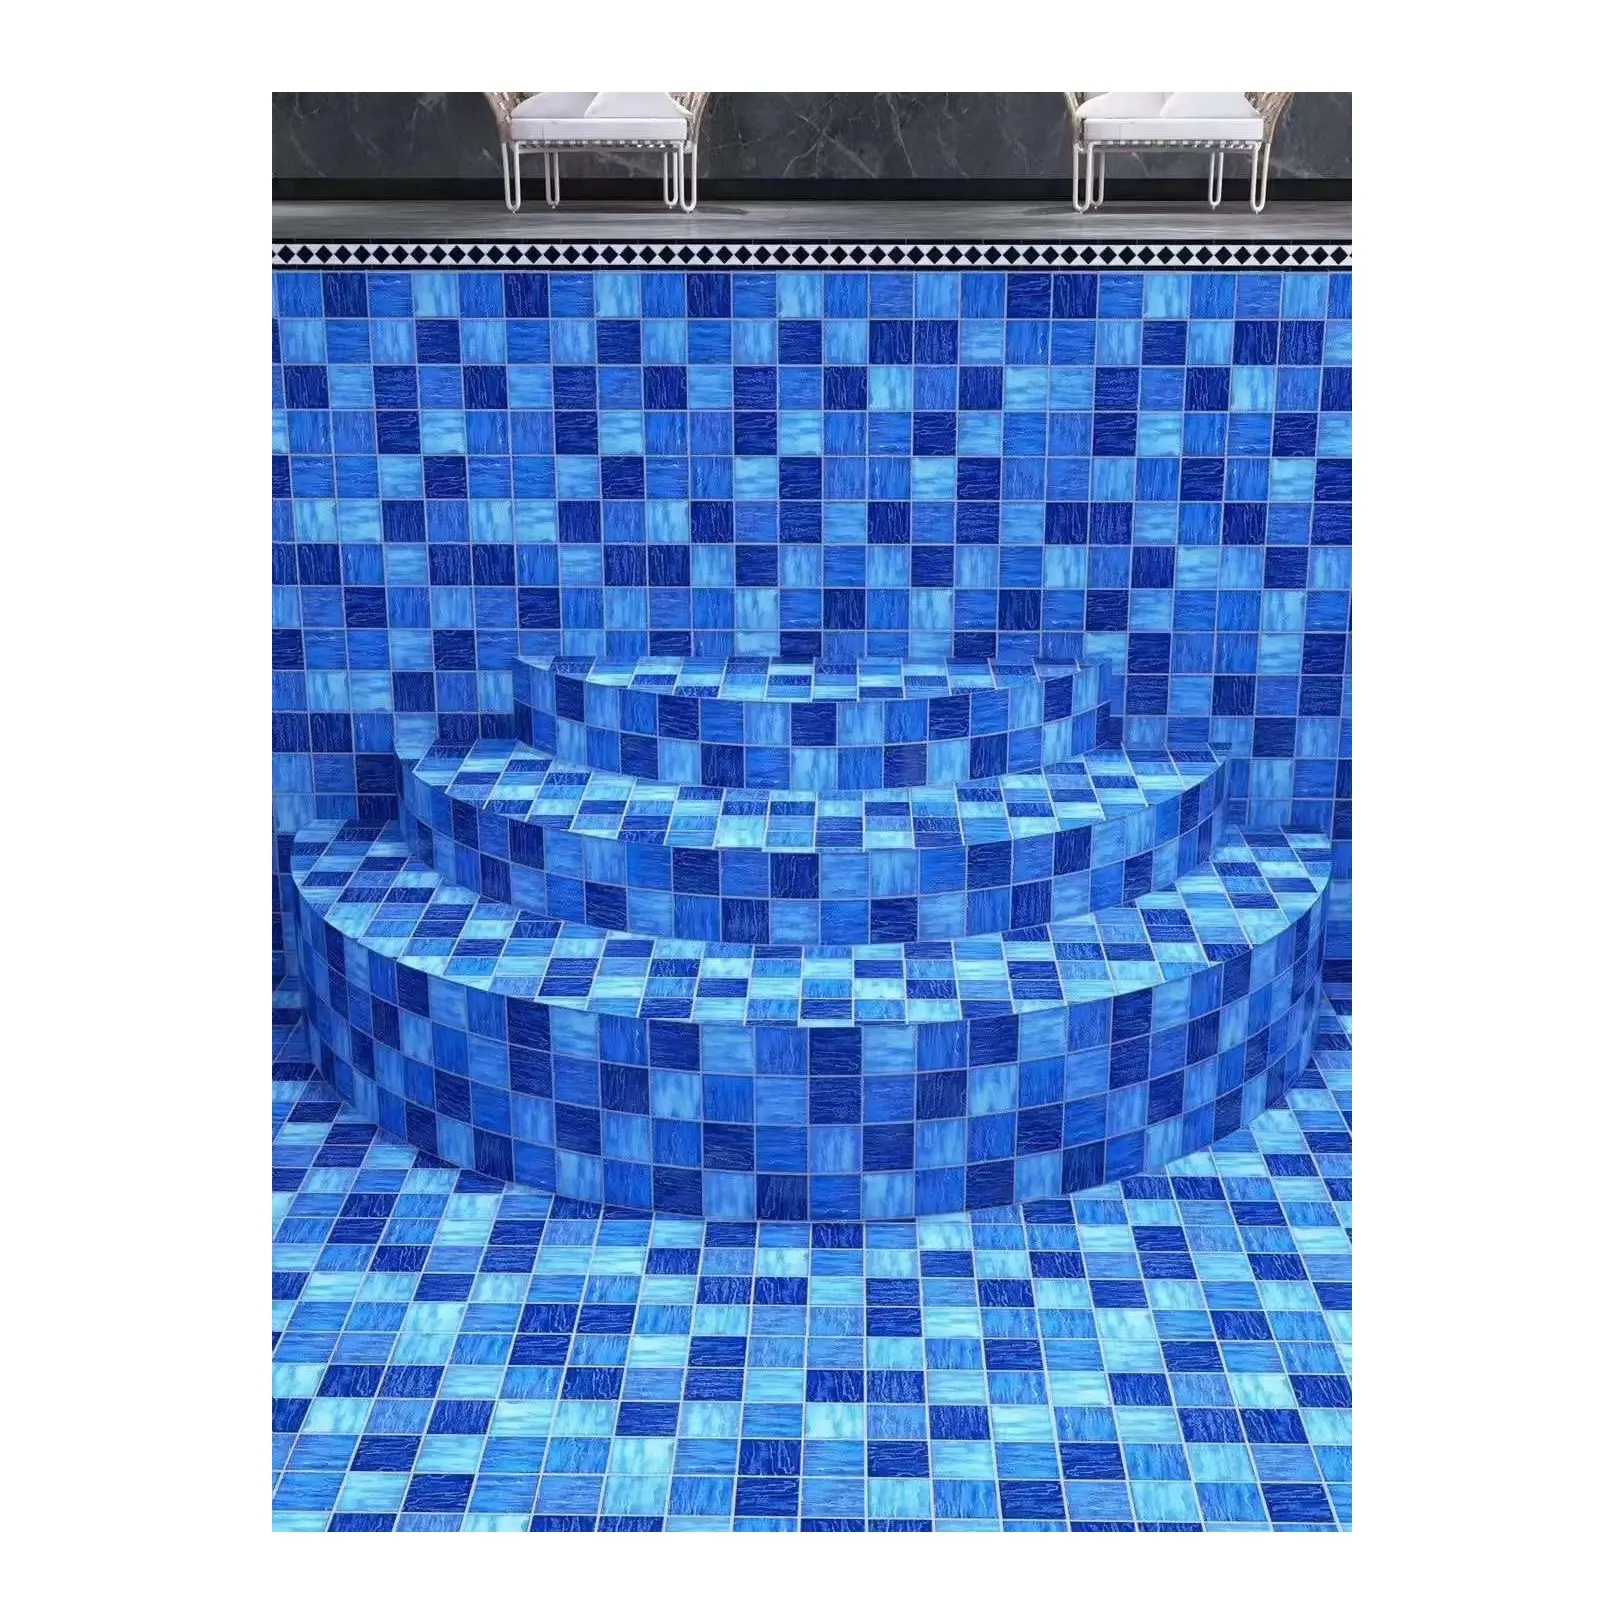 Verkoopprijs Kwaliteit Standaard Goedkope Mix Zee Blauwe Golf Oceaan Glas Keramische Zwembad Vloer Mozaïek Tegels Voor Zwembad